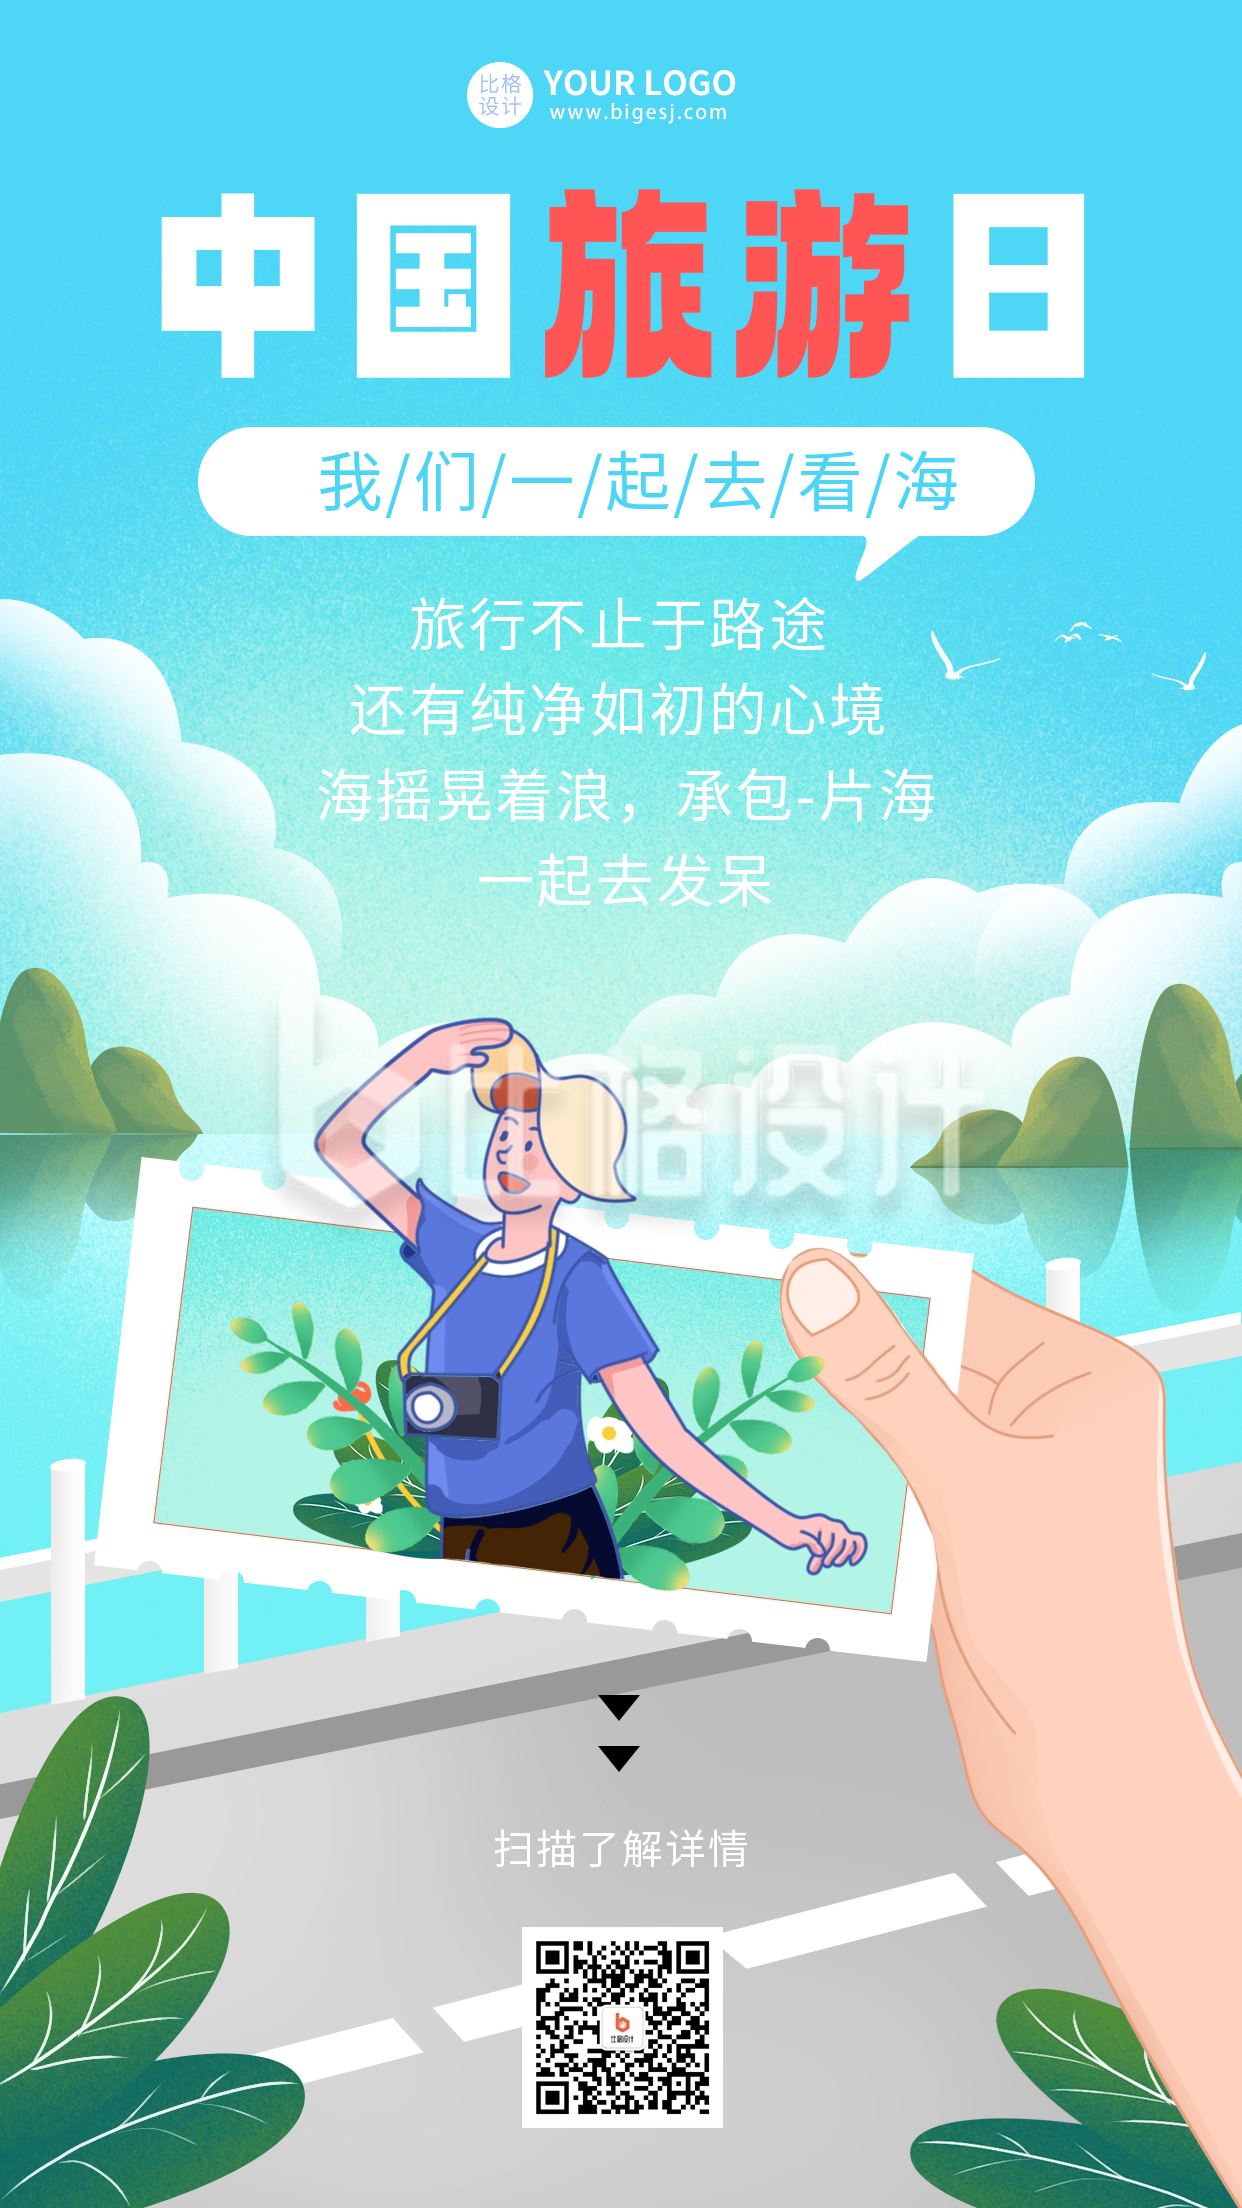 蓝色手绘风中国旅游日宣传手机海报